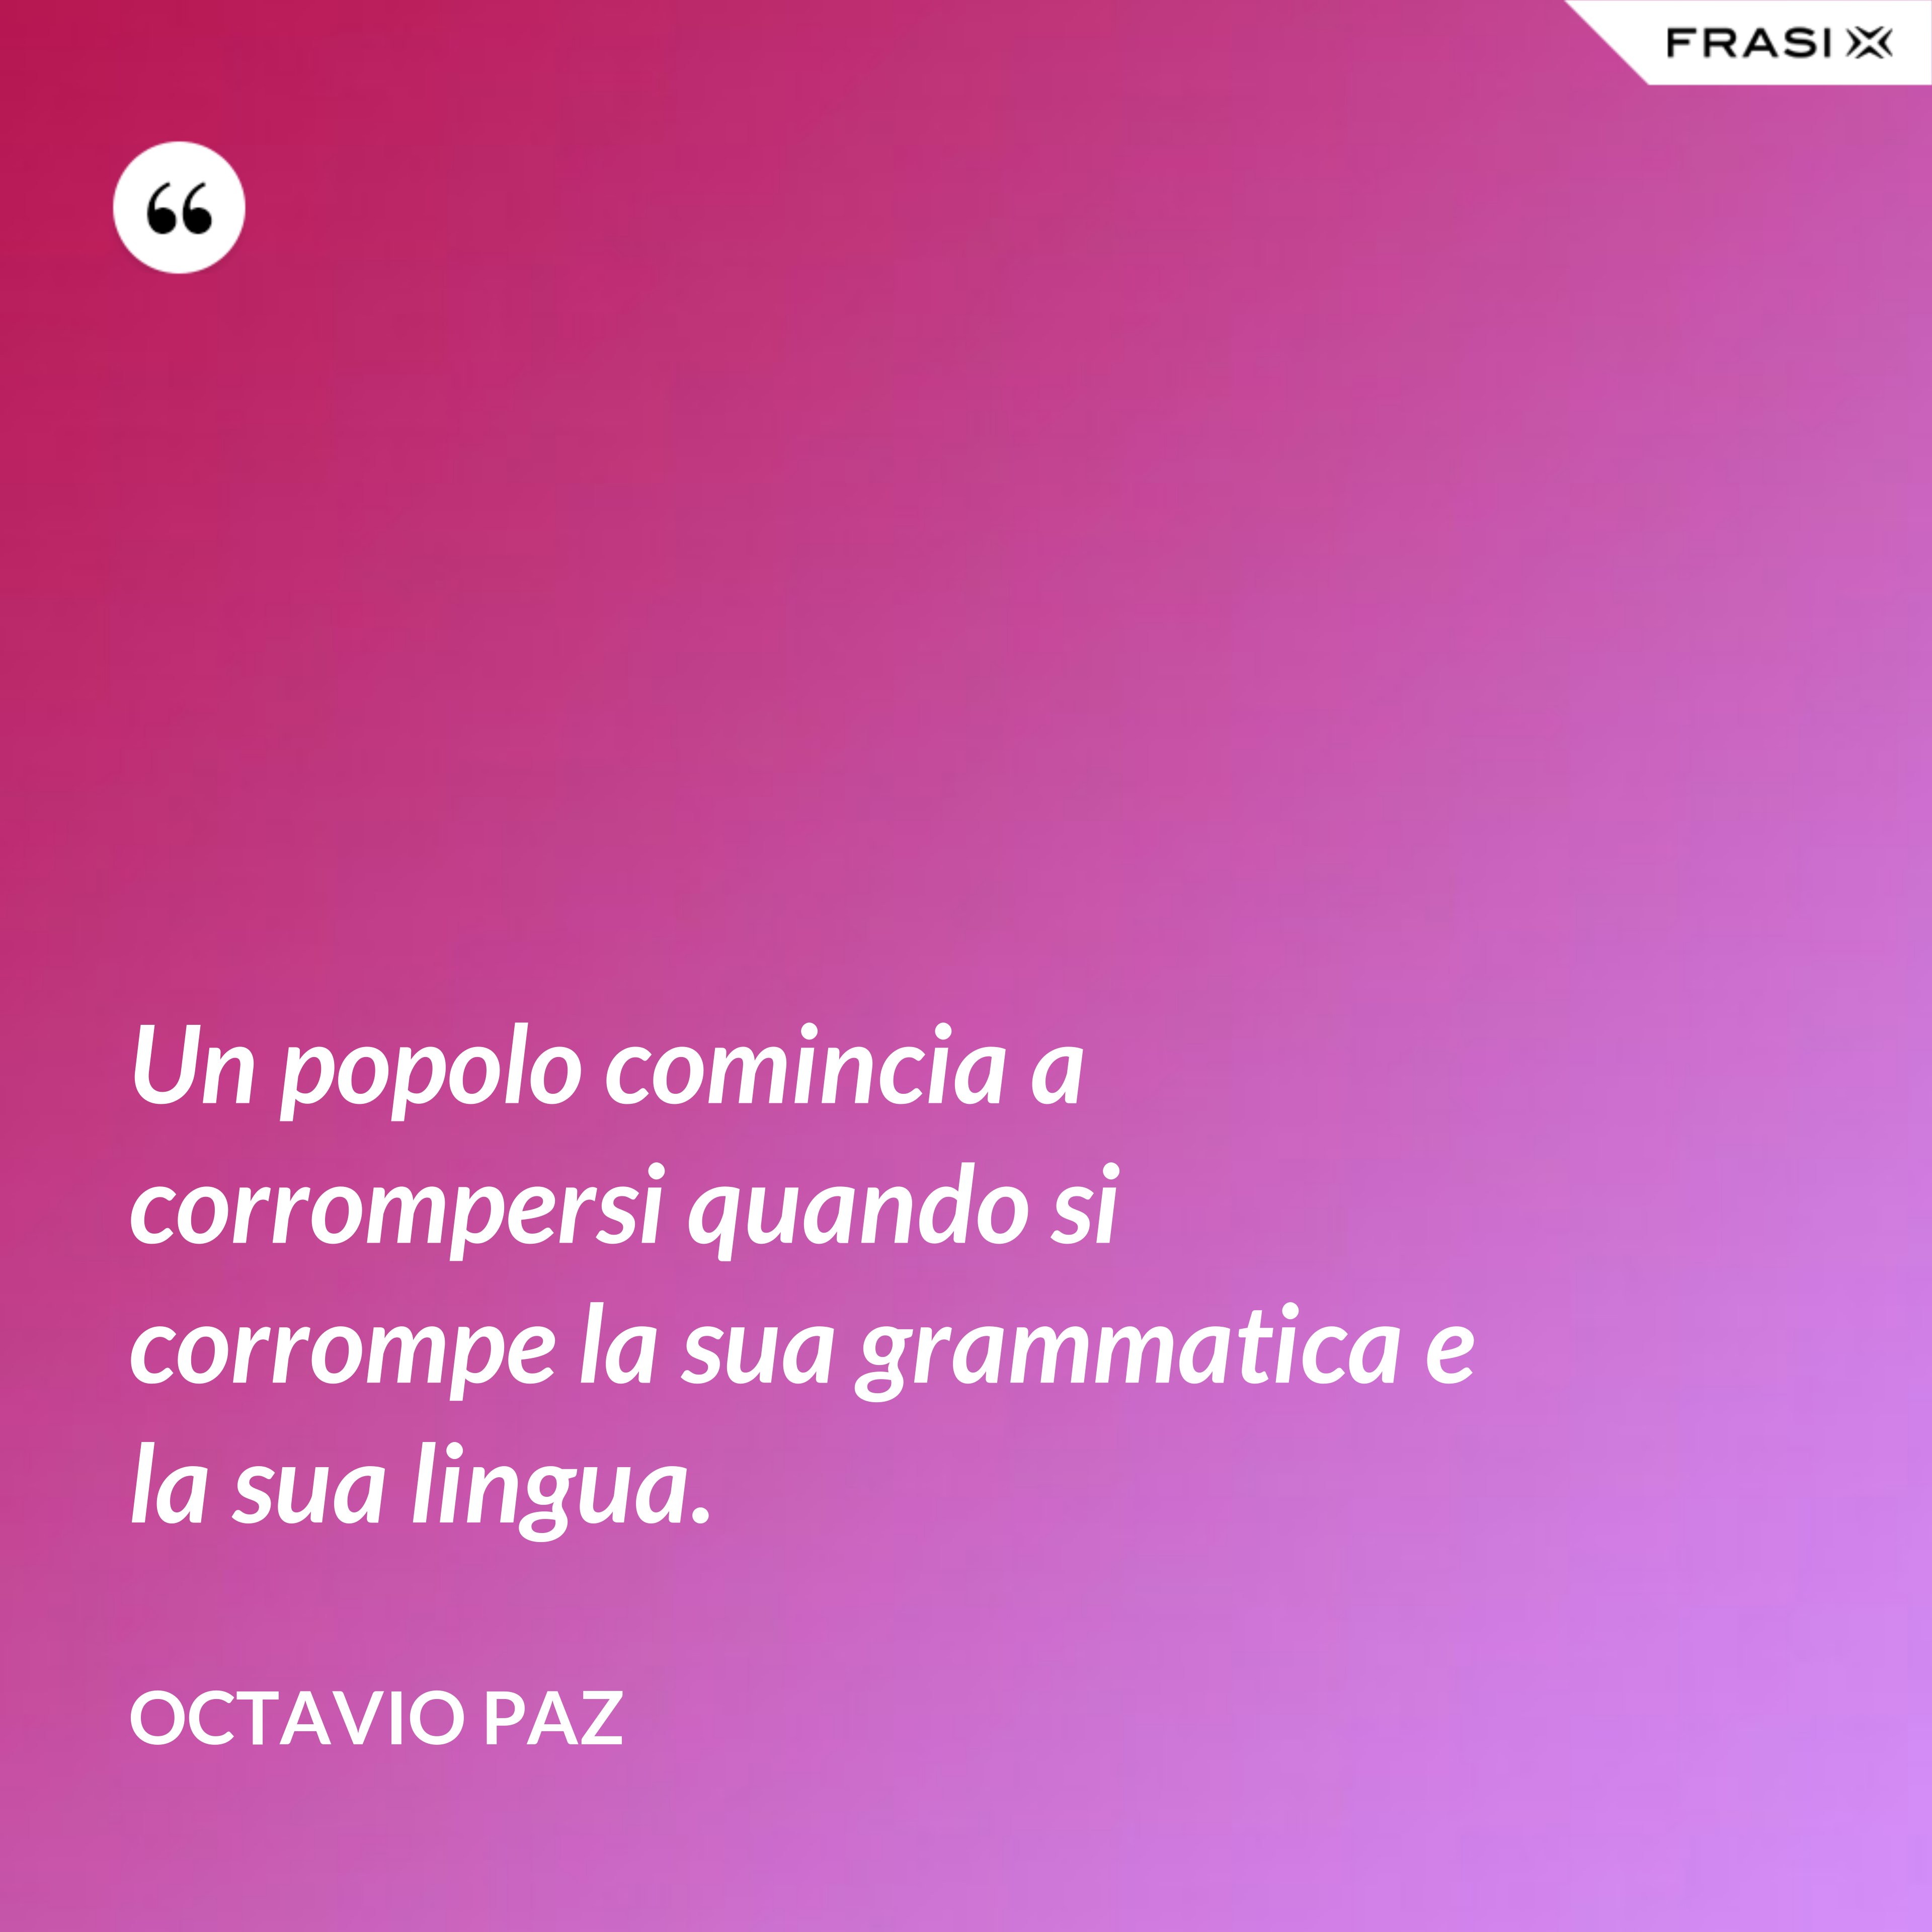 Un popolo comincia a corrompersi quando si corrompe la sua grammatica e la sua lingua. - Octavio Paz